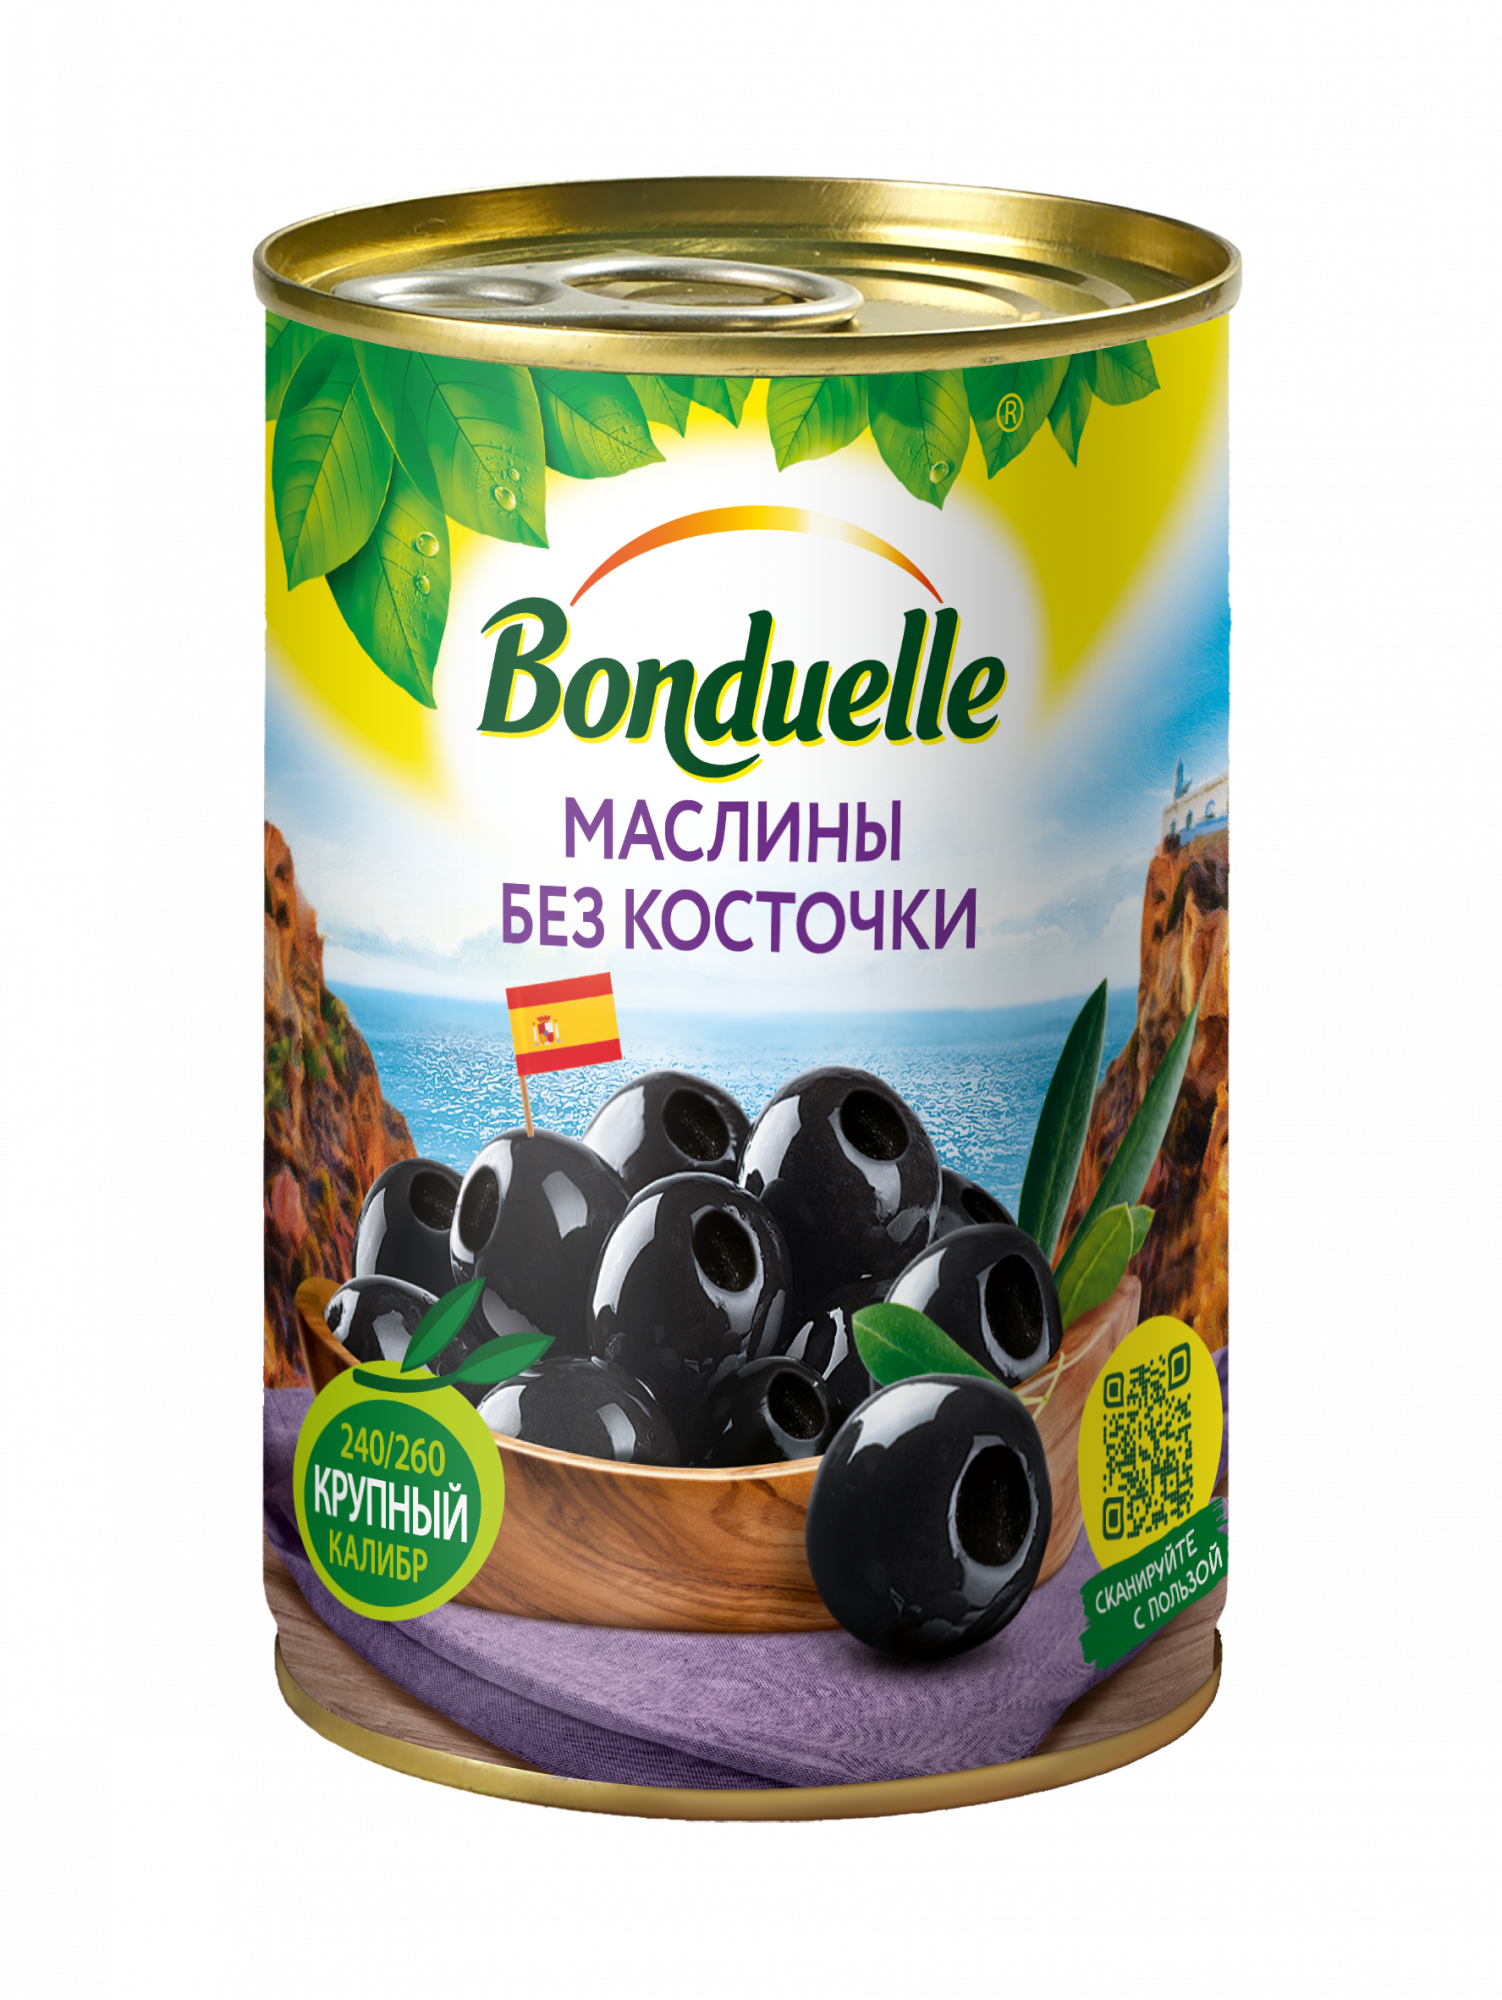 Маслины Bonduelle черные без косточки 300 г - купить в Мегамаркет Екб, цена на Мегамаркет